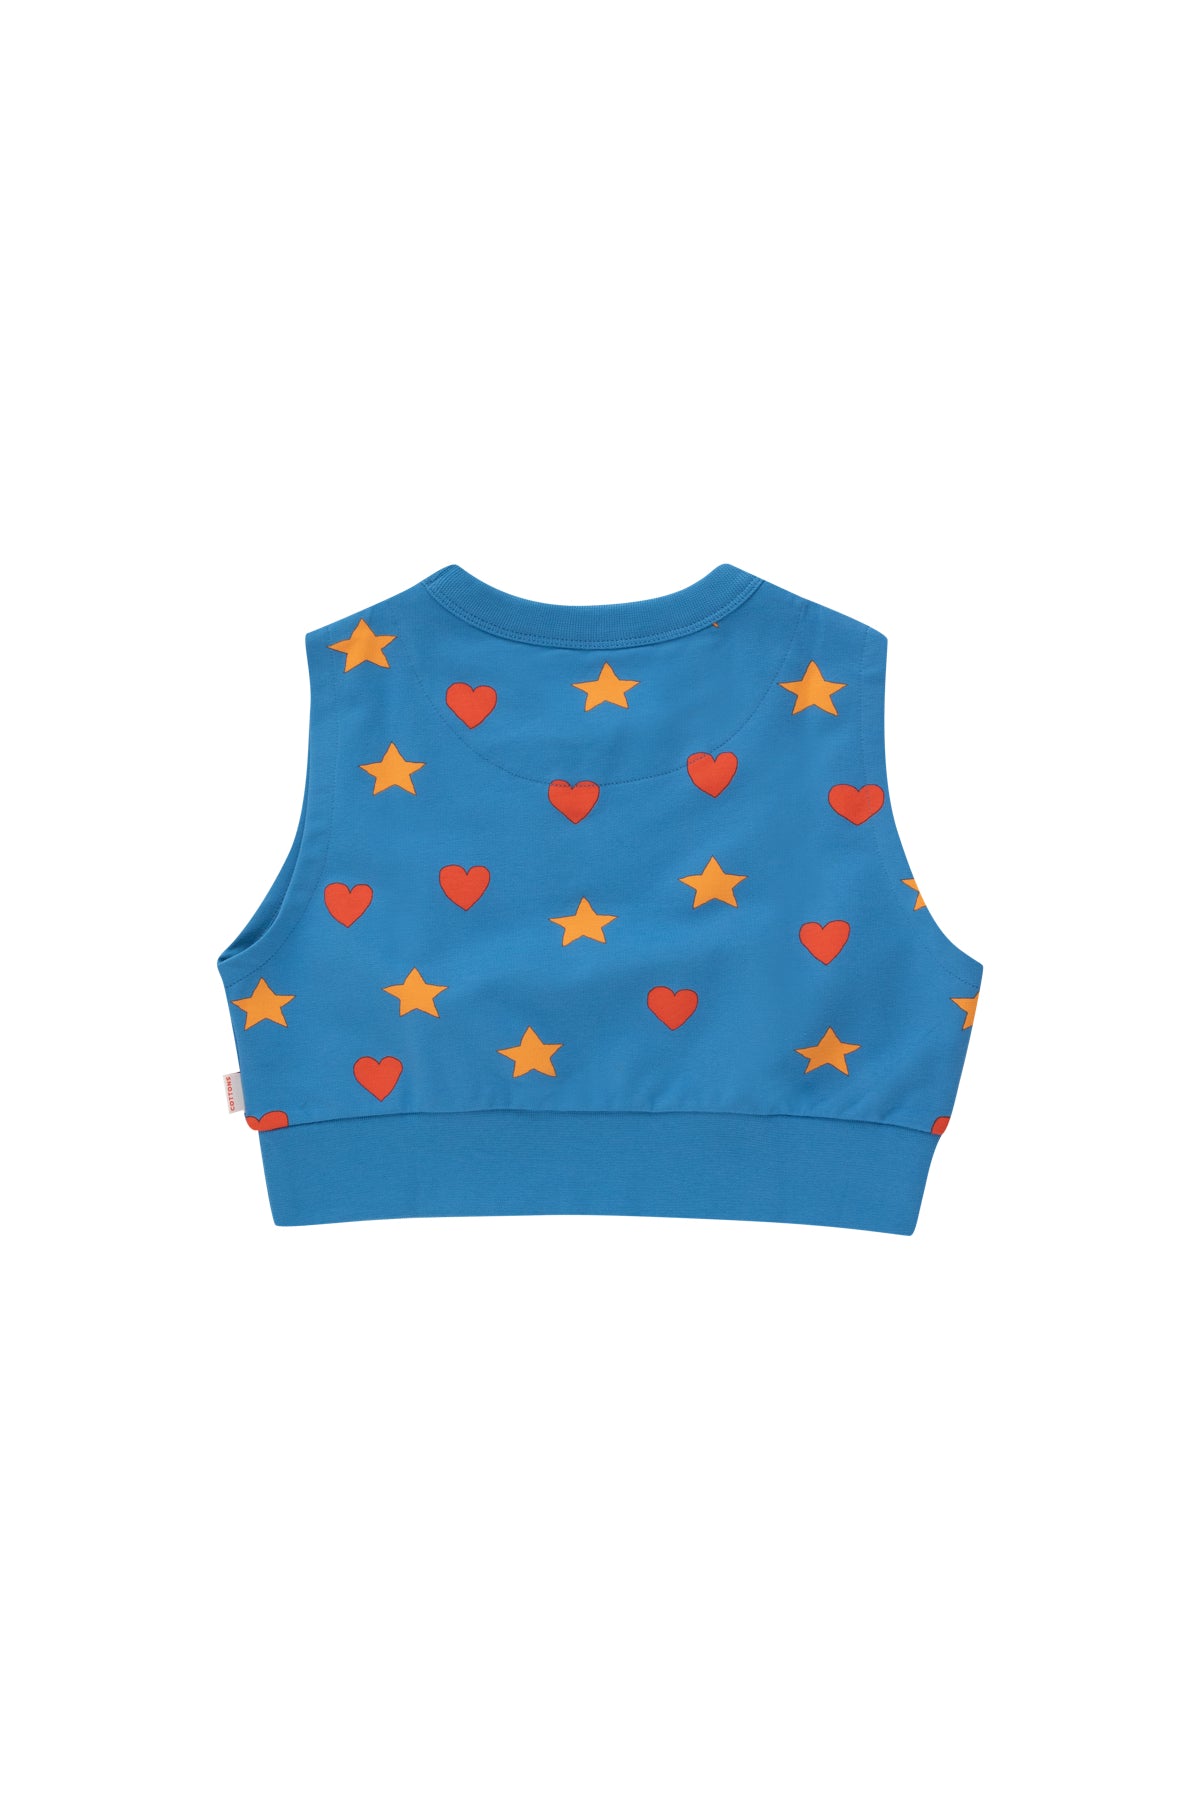 Tiny Cottons Hearts Stars Sleeveless Sweatshirt - Blue